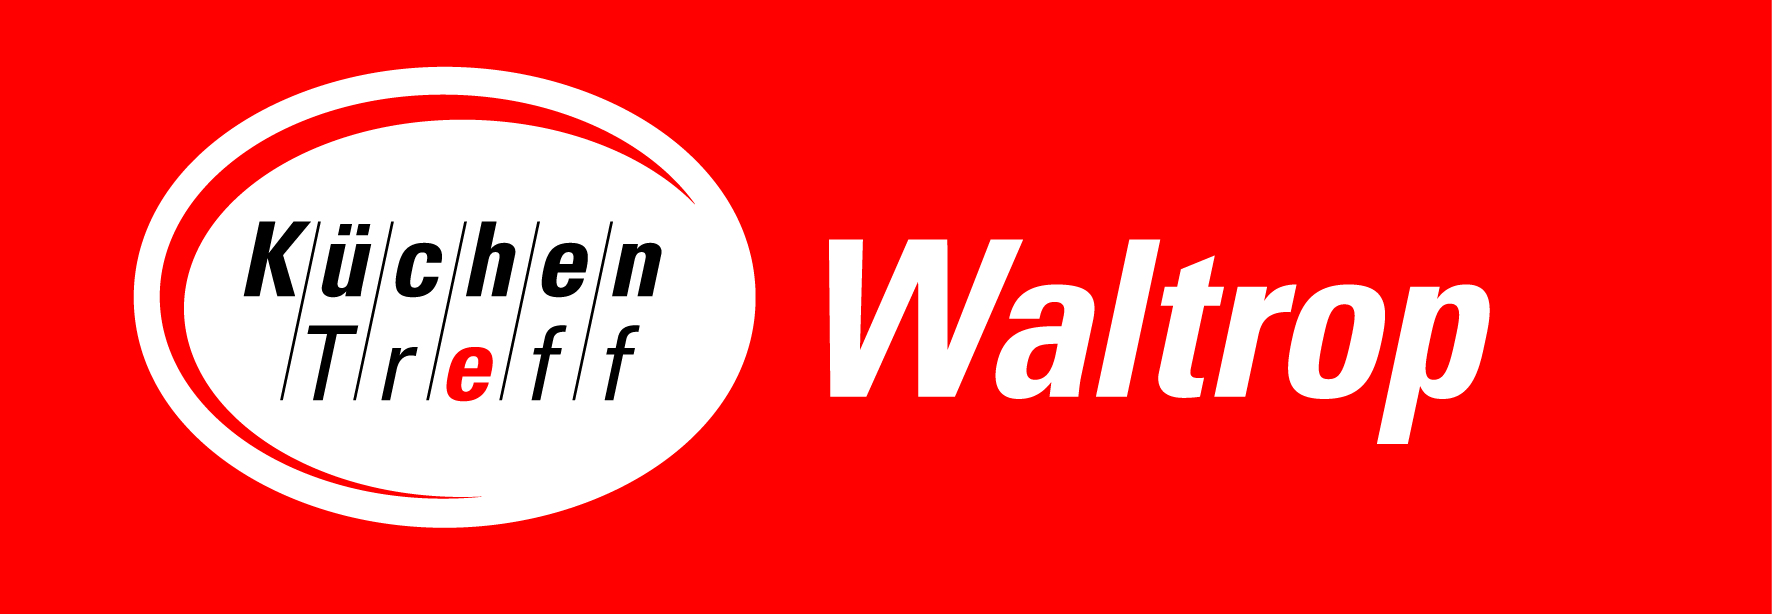 KüchenTreff Waltrop GmbH